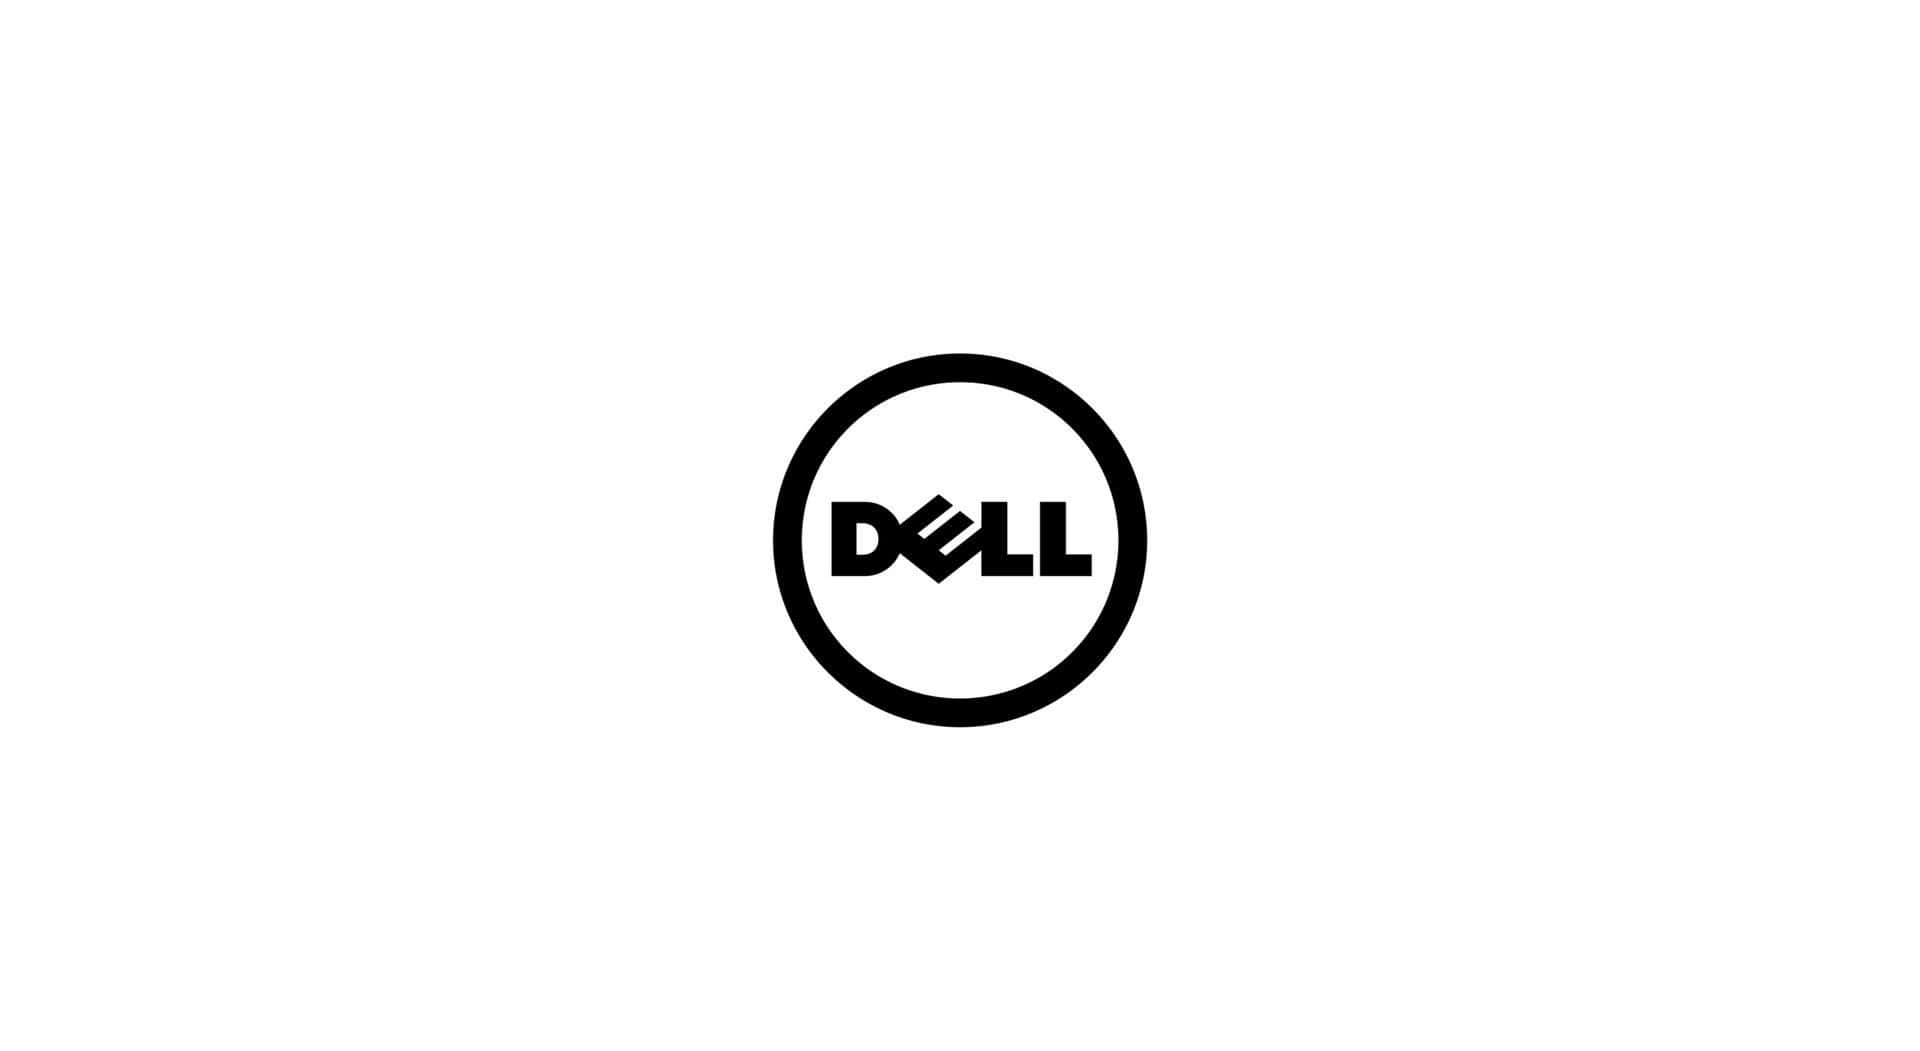 Ilpotere Della Tecnologia Dell